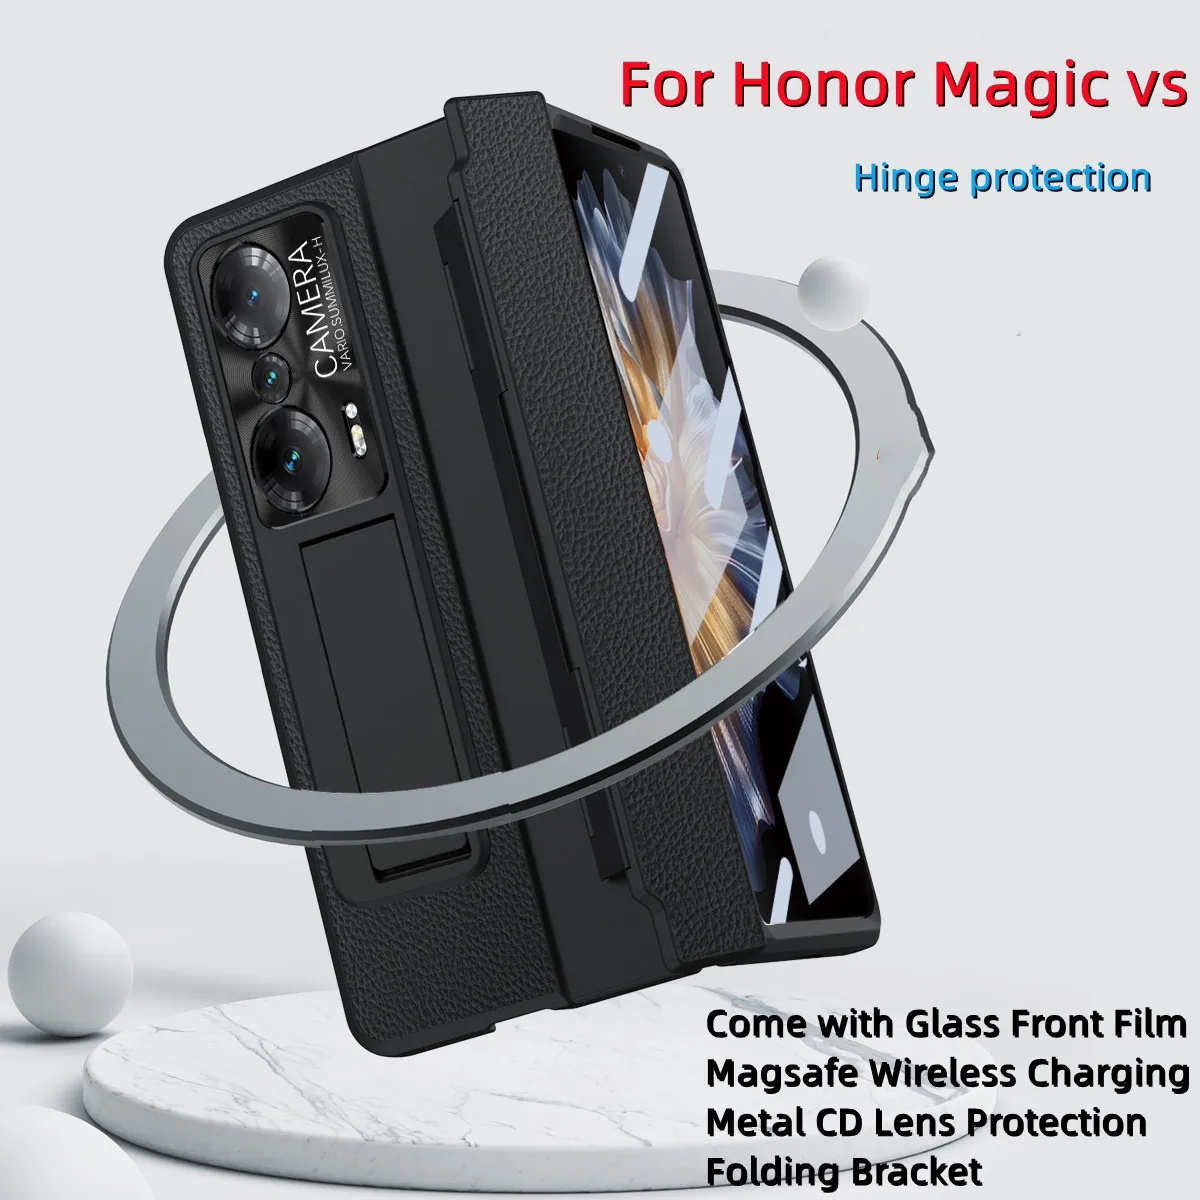 

Кожаная искусственная кожа Lychee для Honor Magic VS полная упаковка шарнирная защита телефона телефон поставляется со стеклянной передней пленкой и складным кронштейном